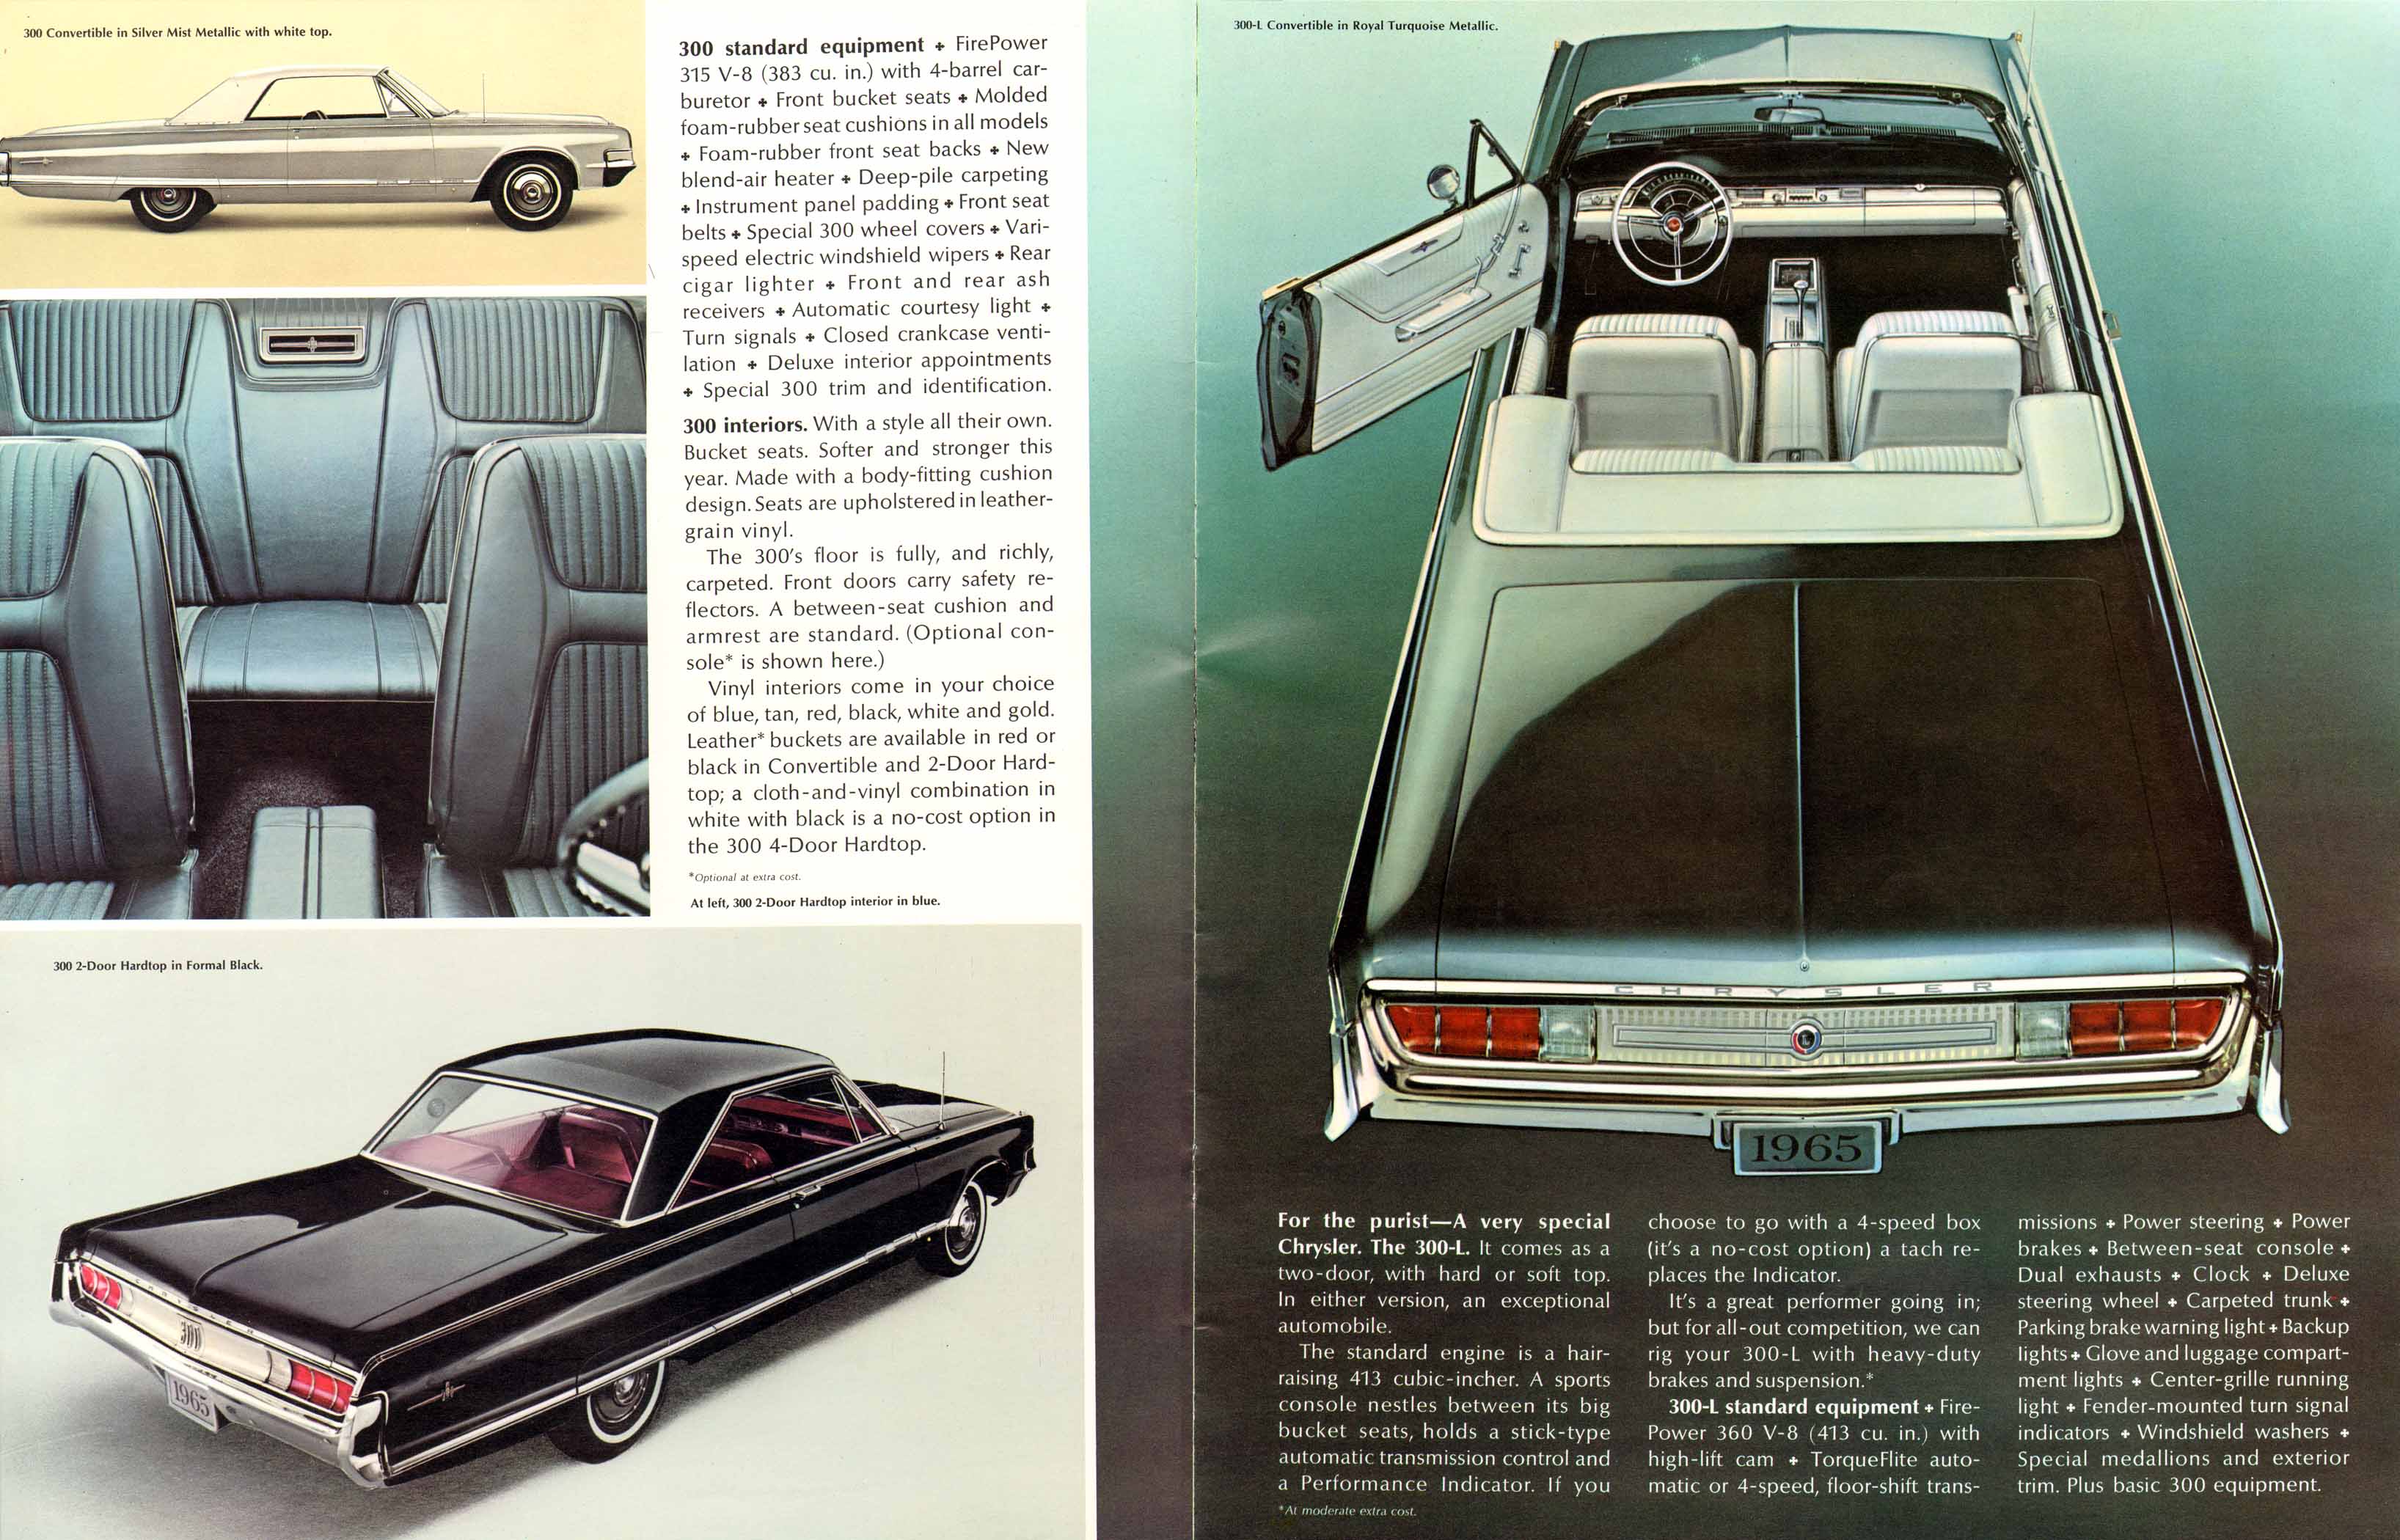 1965 Chrysler imperial part #2